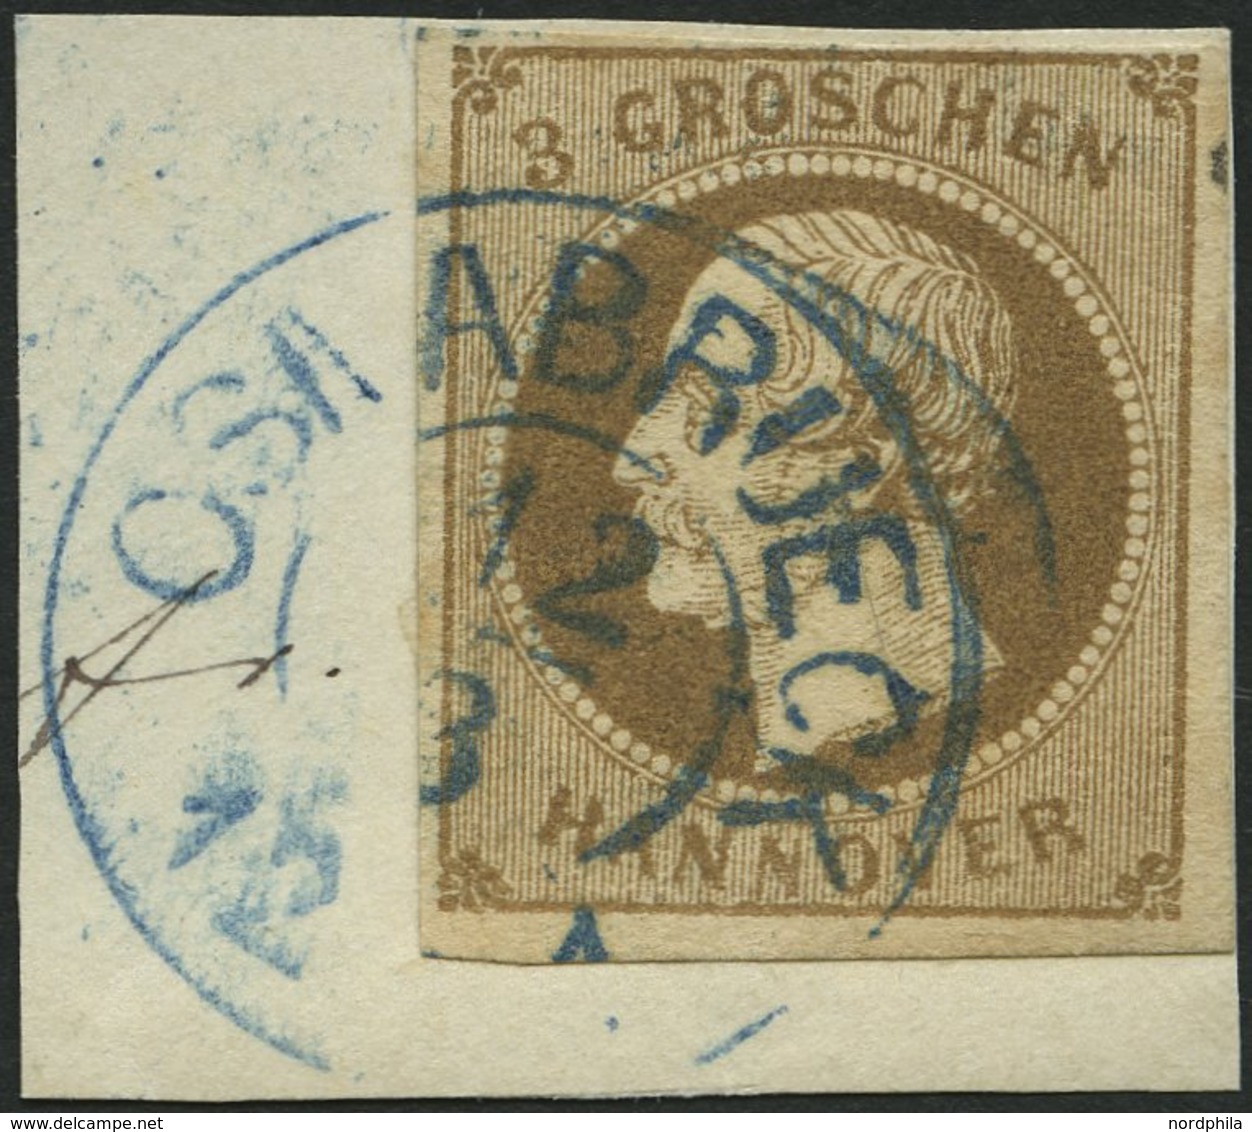 HANNOVER 19a BrfStk, 1861, 3 Gr. Braun, Blauer K2 OSNABRÜCK, Prachtbriefstück, Mi. (70.-) - Hanovre